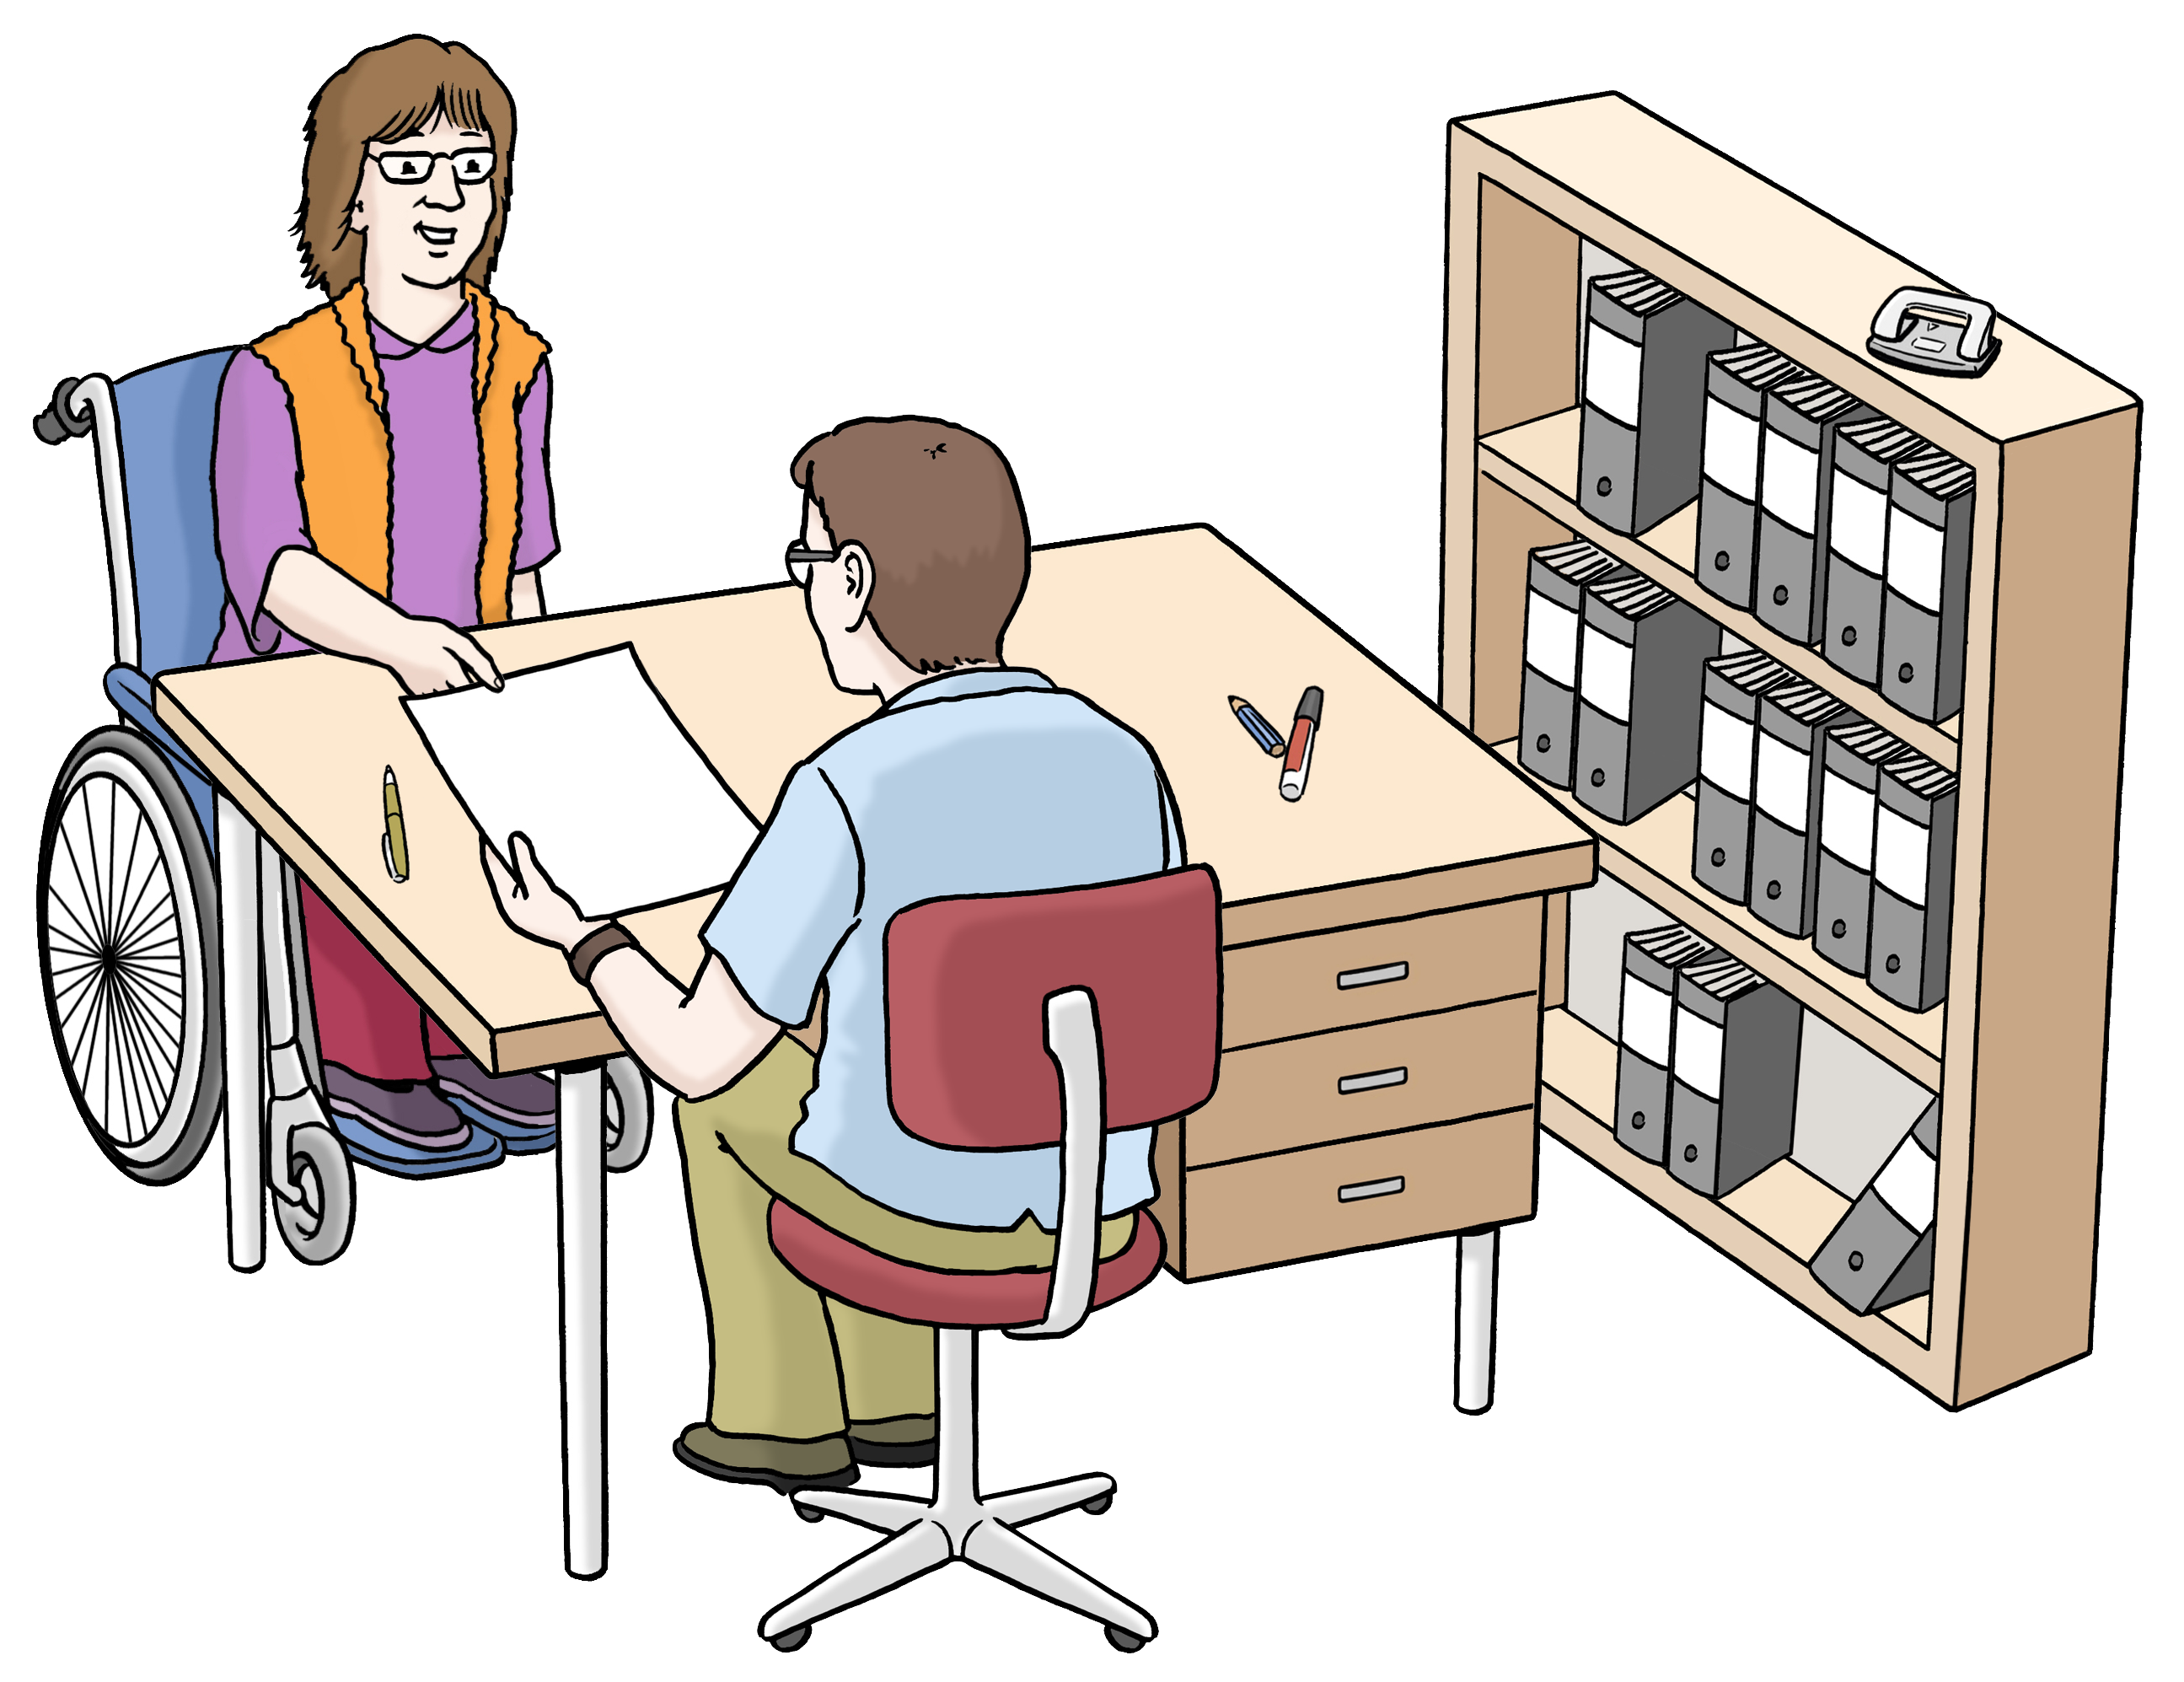 Leichte Sprache Bild: Eine Frau im Rollstuhl in einem Büro. Sie übergibt einem Mann am Schreibtisch einen Zettel